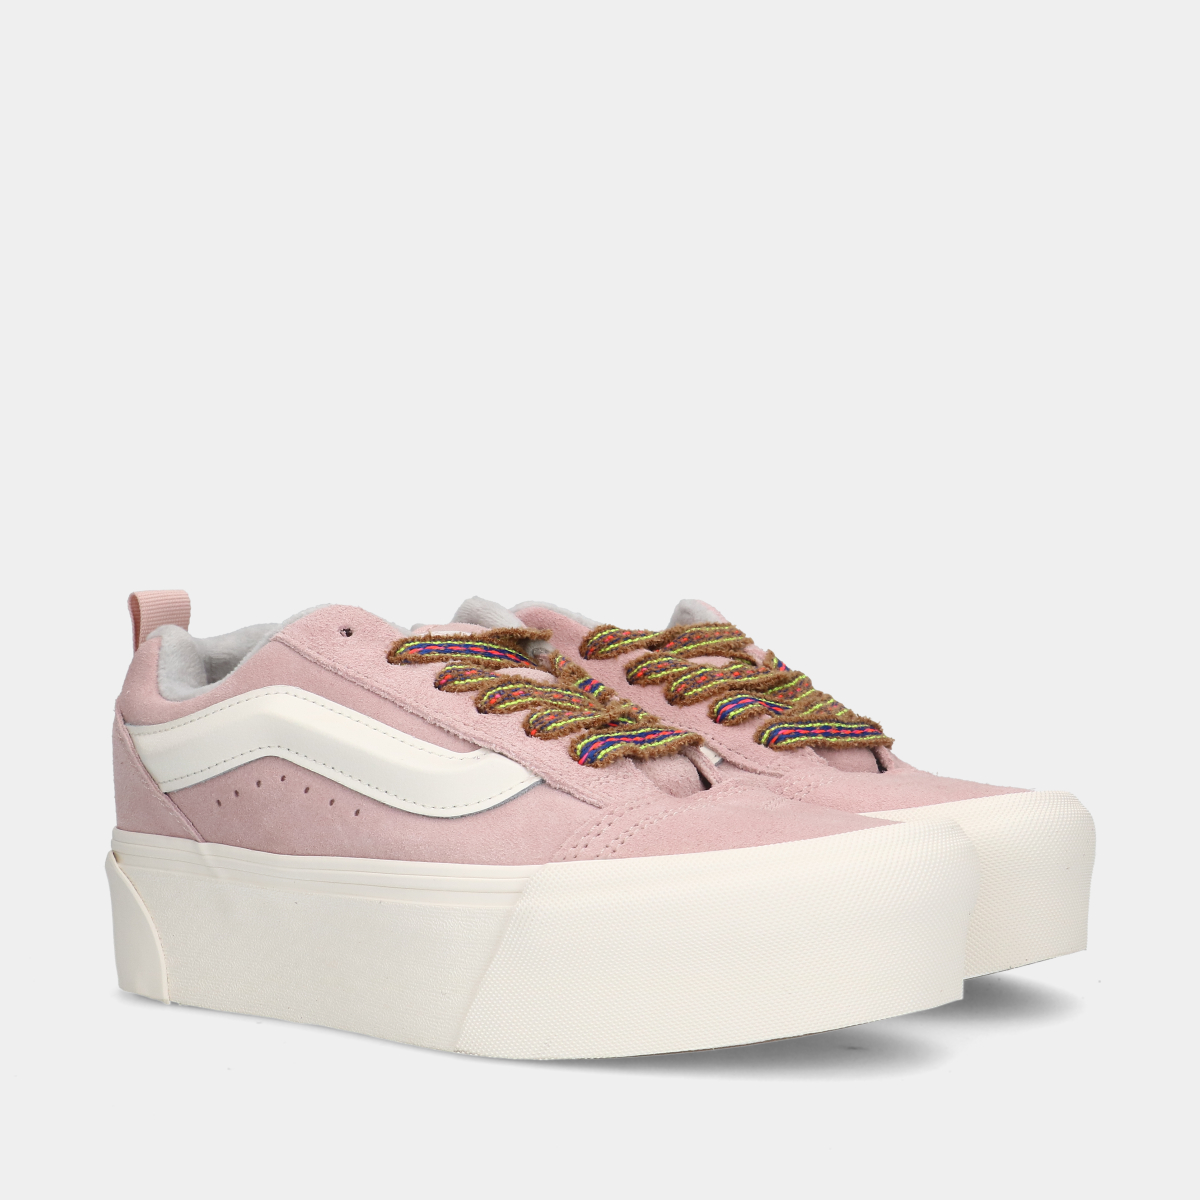 Vans Knu Stack Pink dames sneakers